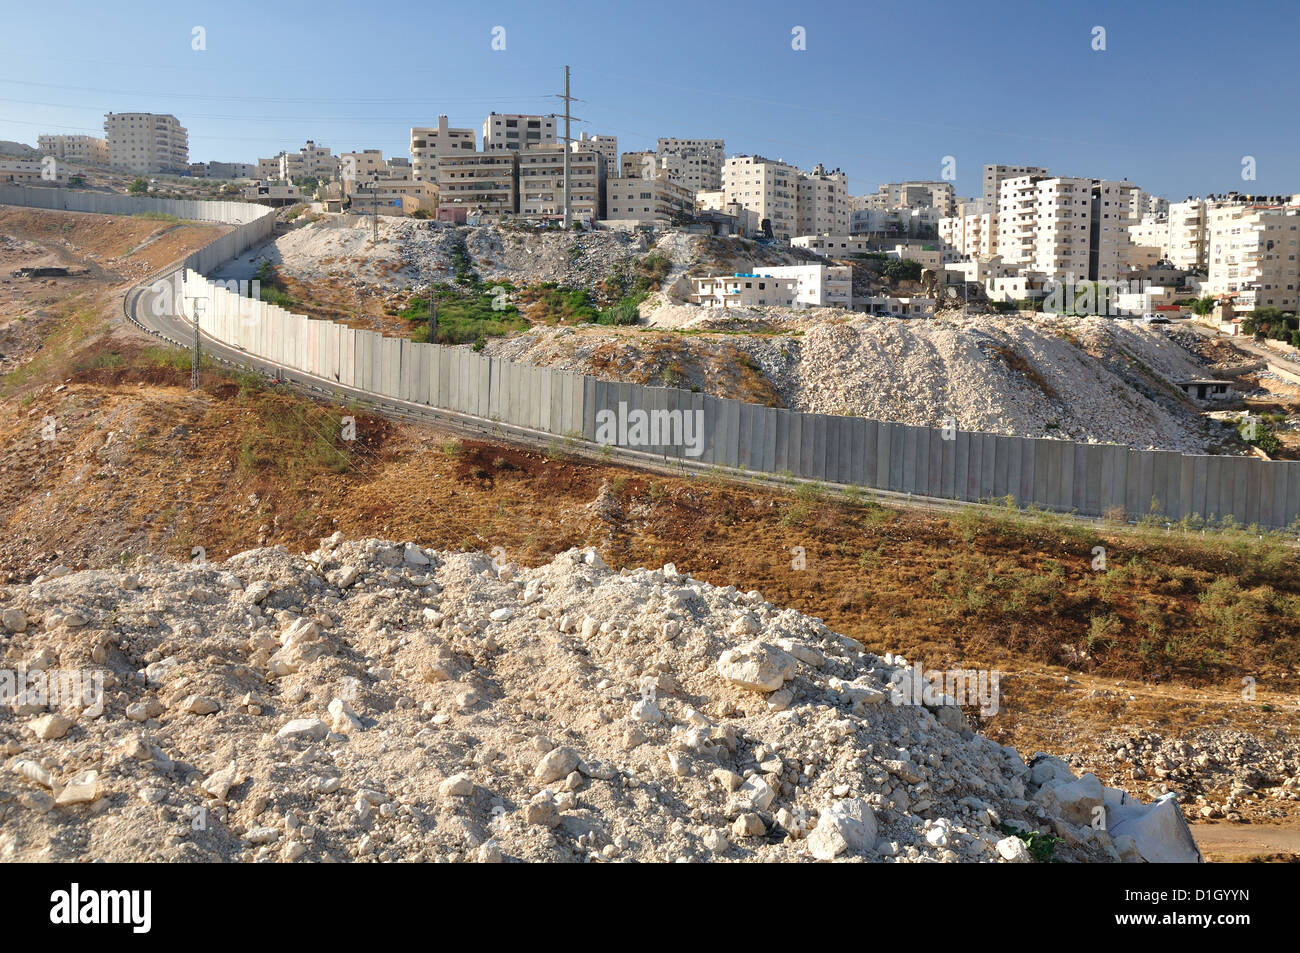 Clôture de sécurité, la séparation de la partie arabe de Jérusalem. Israël. Banque D'Images